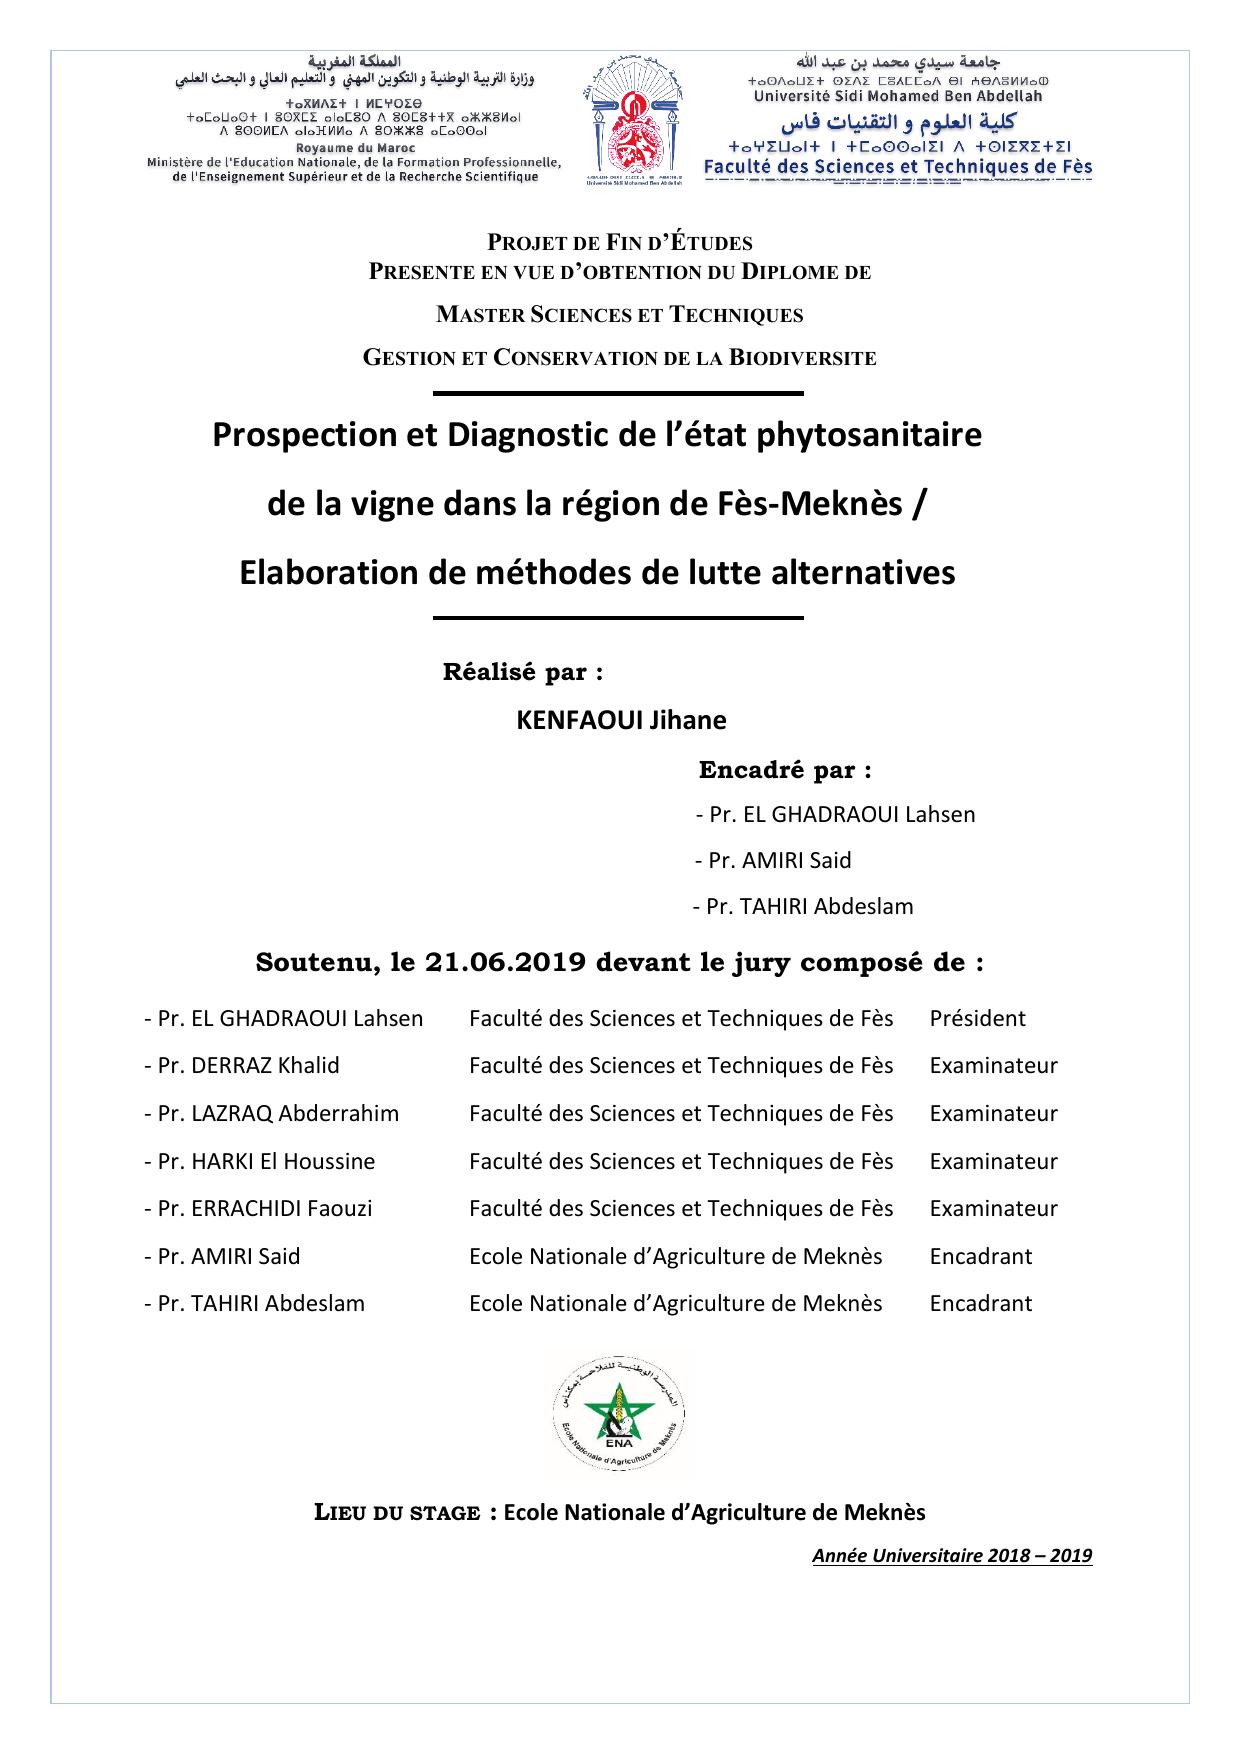 Prospection et Diagnostic de l’état phytosanitaire de la vigne dans la région de Fès-Meknès / Elaboration de méthodes de lutte alternatives